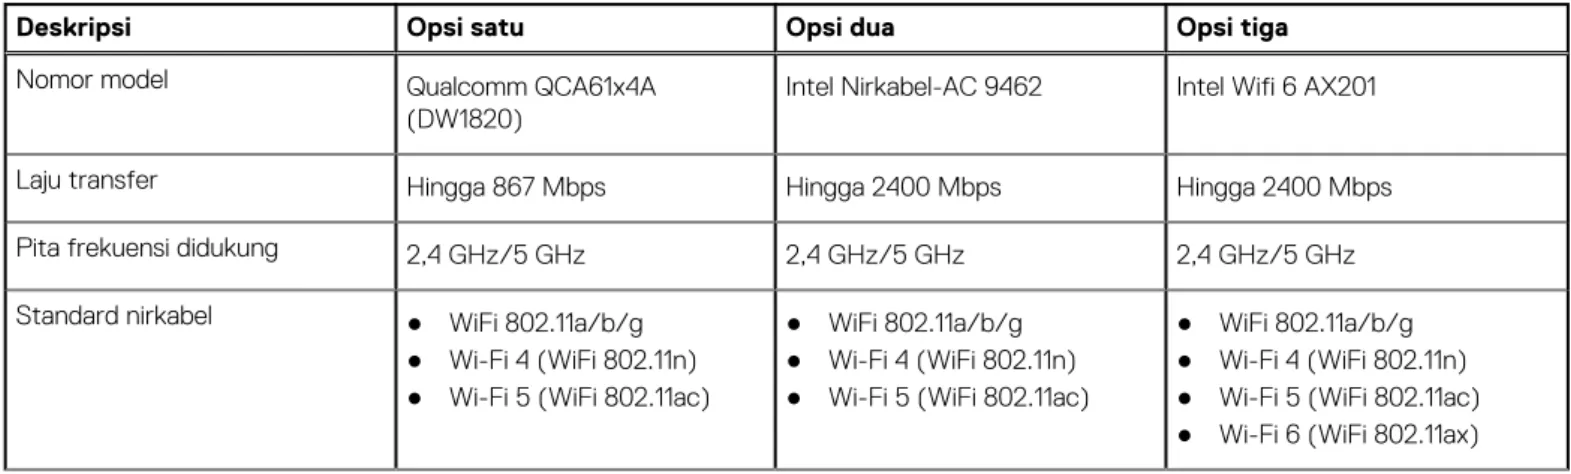 Tabel berikut mencantumkan spesifikasi modul Wireless Local Area Network (WLAN) Inspiron 14 5410.